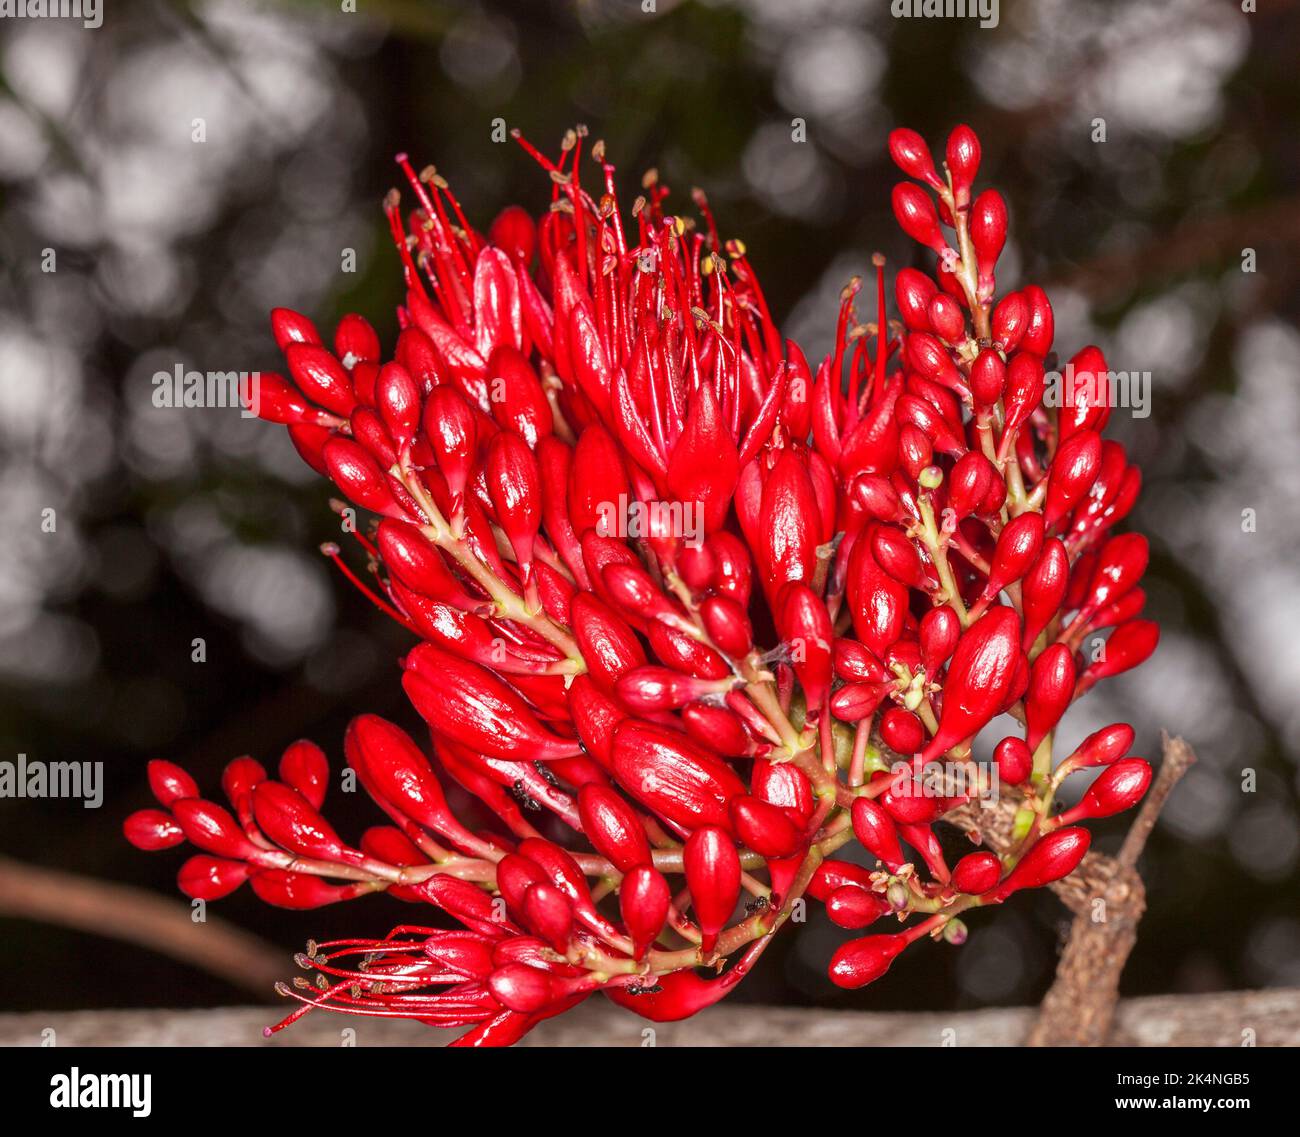 Groupe de fleurs rouges vives de Schotia brachypetala, arbre perroquet en contrebas / haricot de Weeping Boer, arbre africain en croissance en Australie Banque D'Images